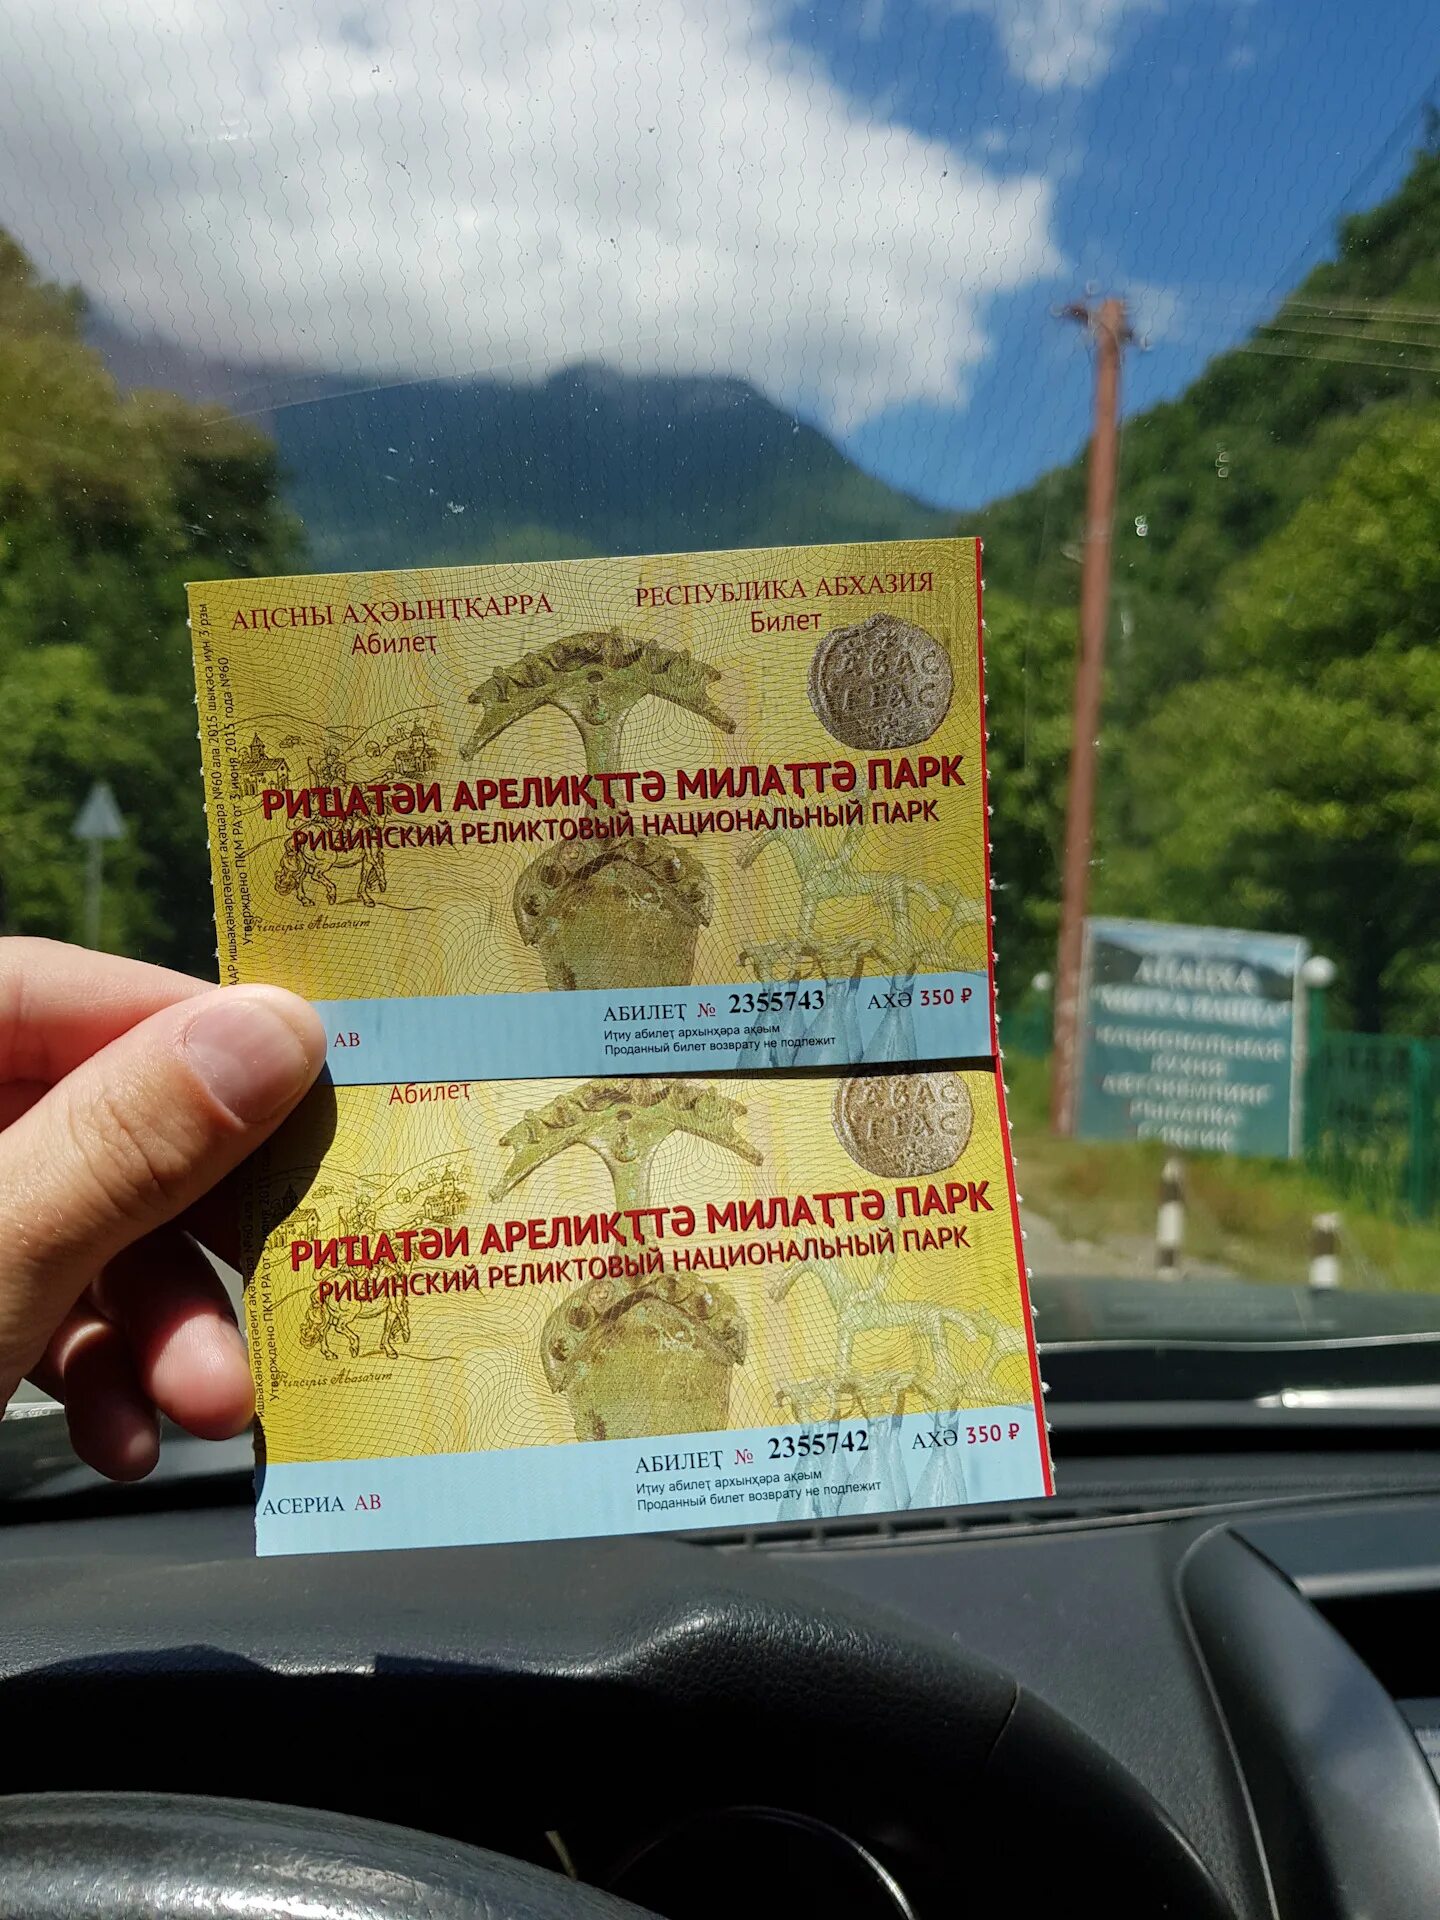 Рицинский реликтовый национальный парк билет. Билеты в Абхазию. Абхазия билеты на самолет. Билет на самолет до Абхазии.